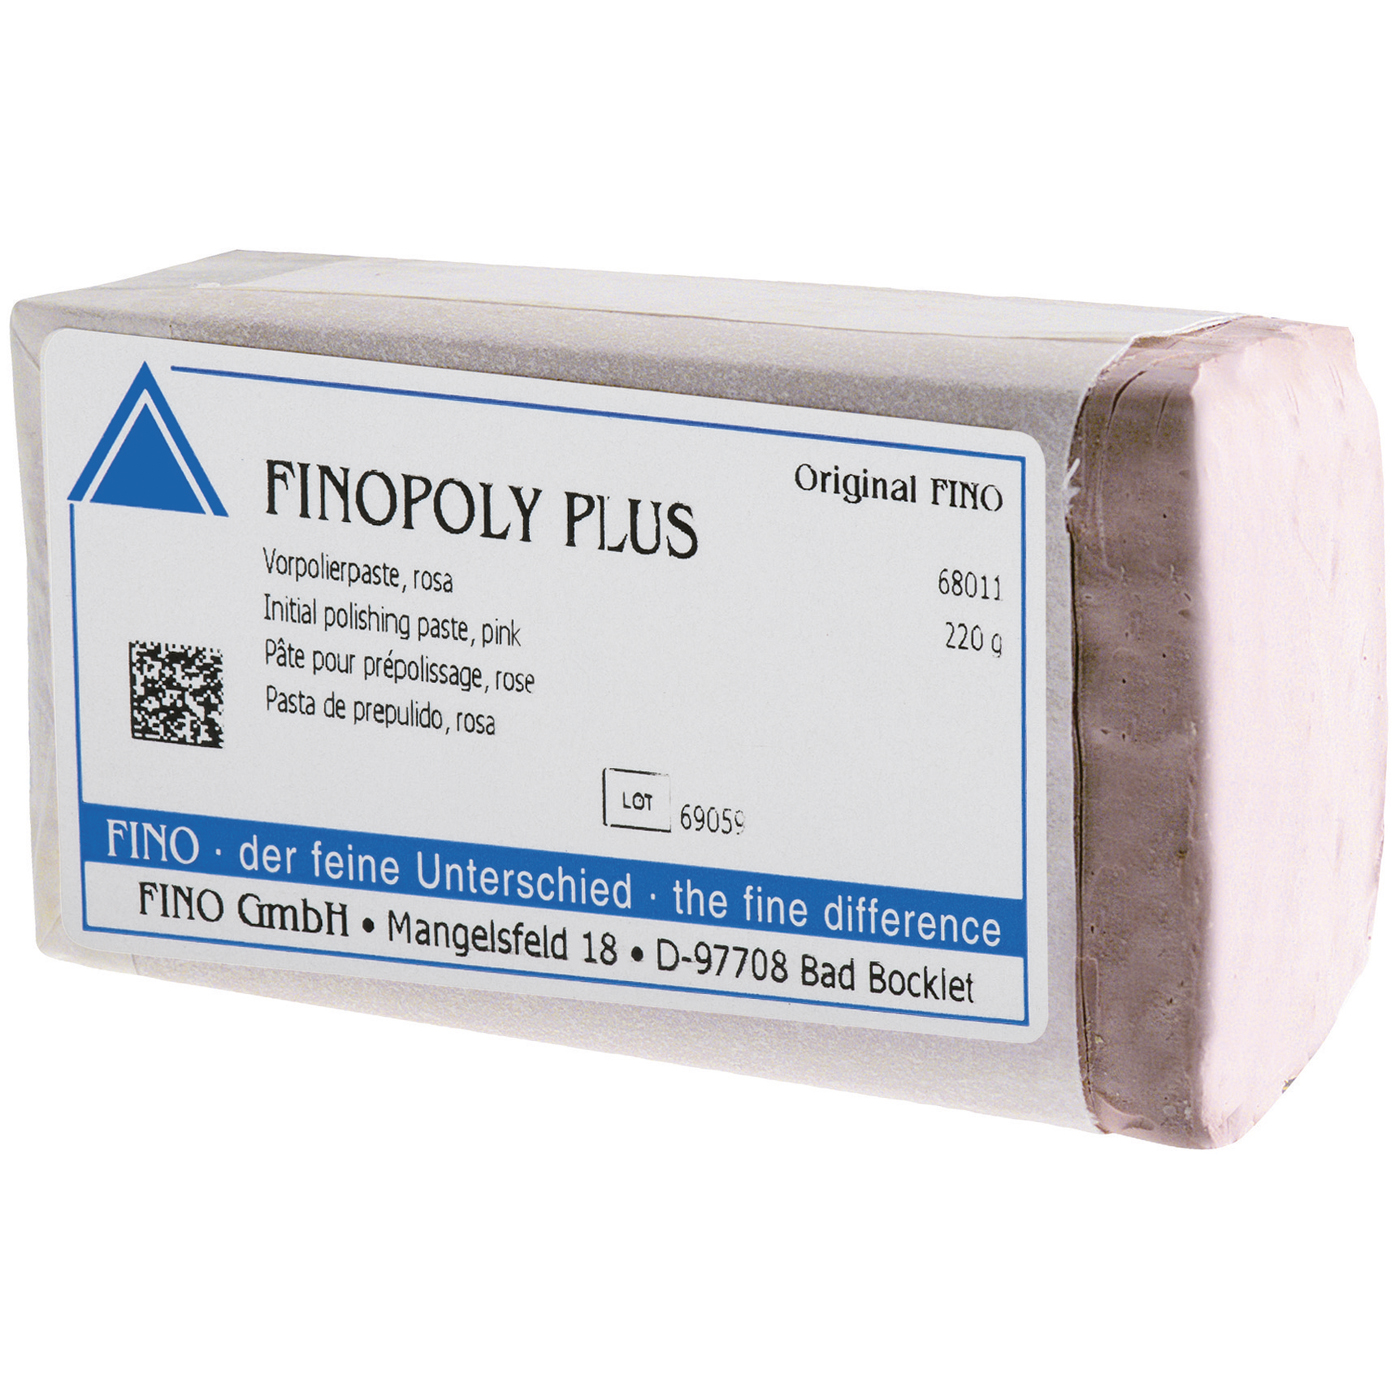 FINOPOLY PLUS Pre-Polishing Paste, Pink - 220 g